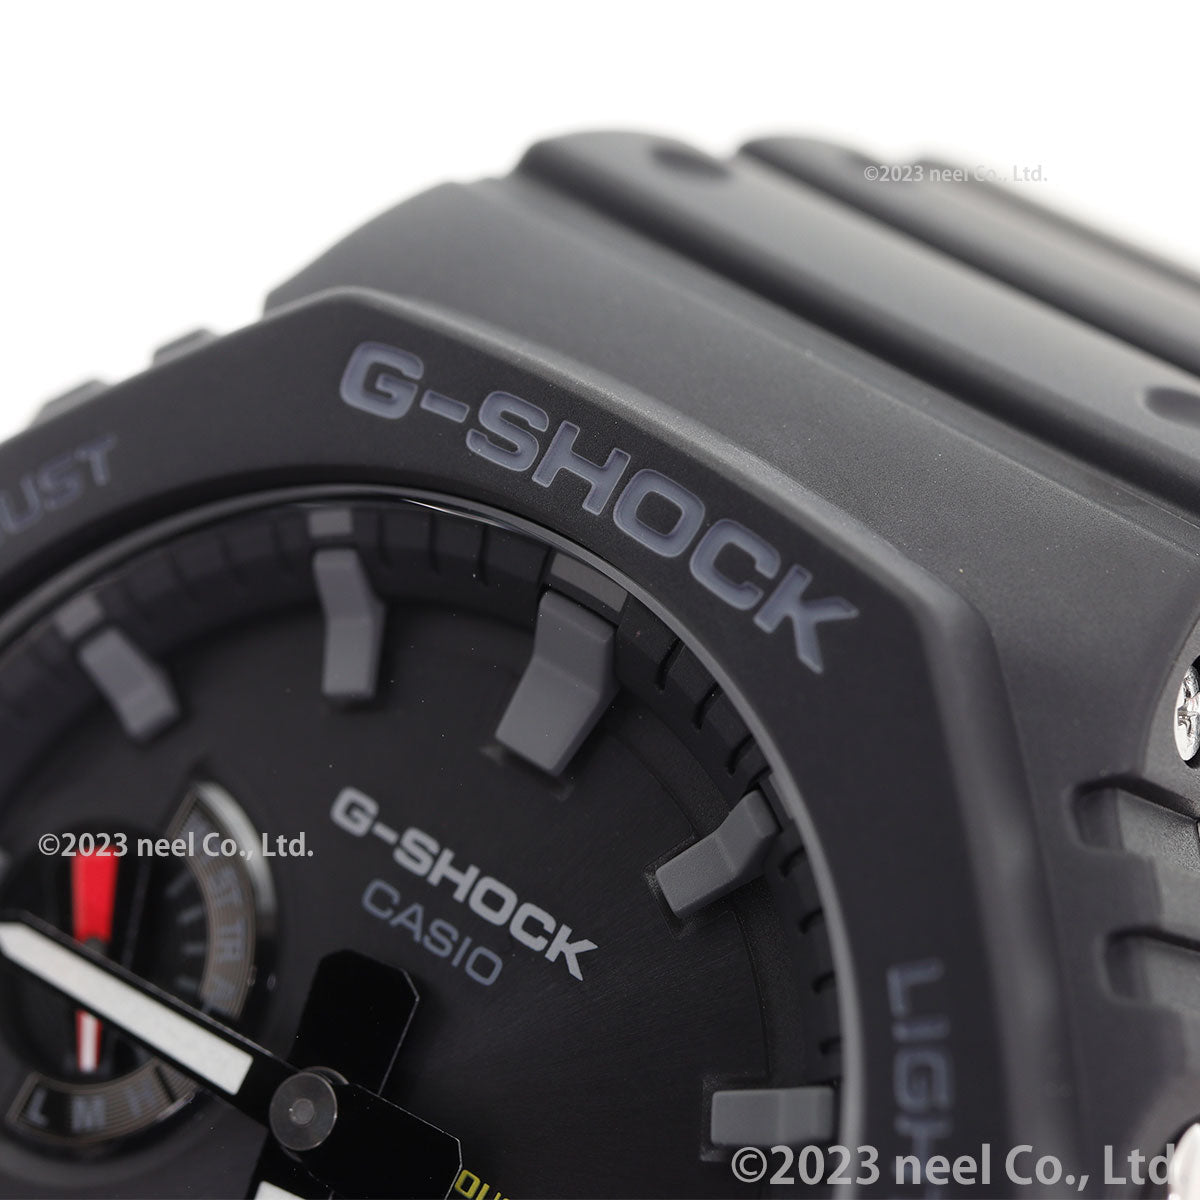 G-SHOCK ソーラー カシオ Gショック CASIO 腕時計 メンズ GA-B2100-1AJF タフソーラー スマートフォンリンク オールブラック